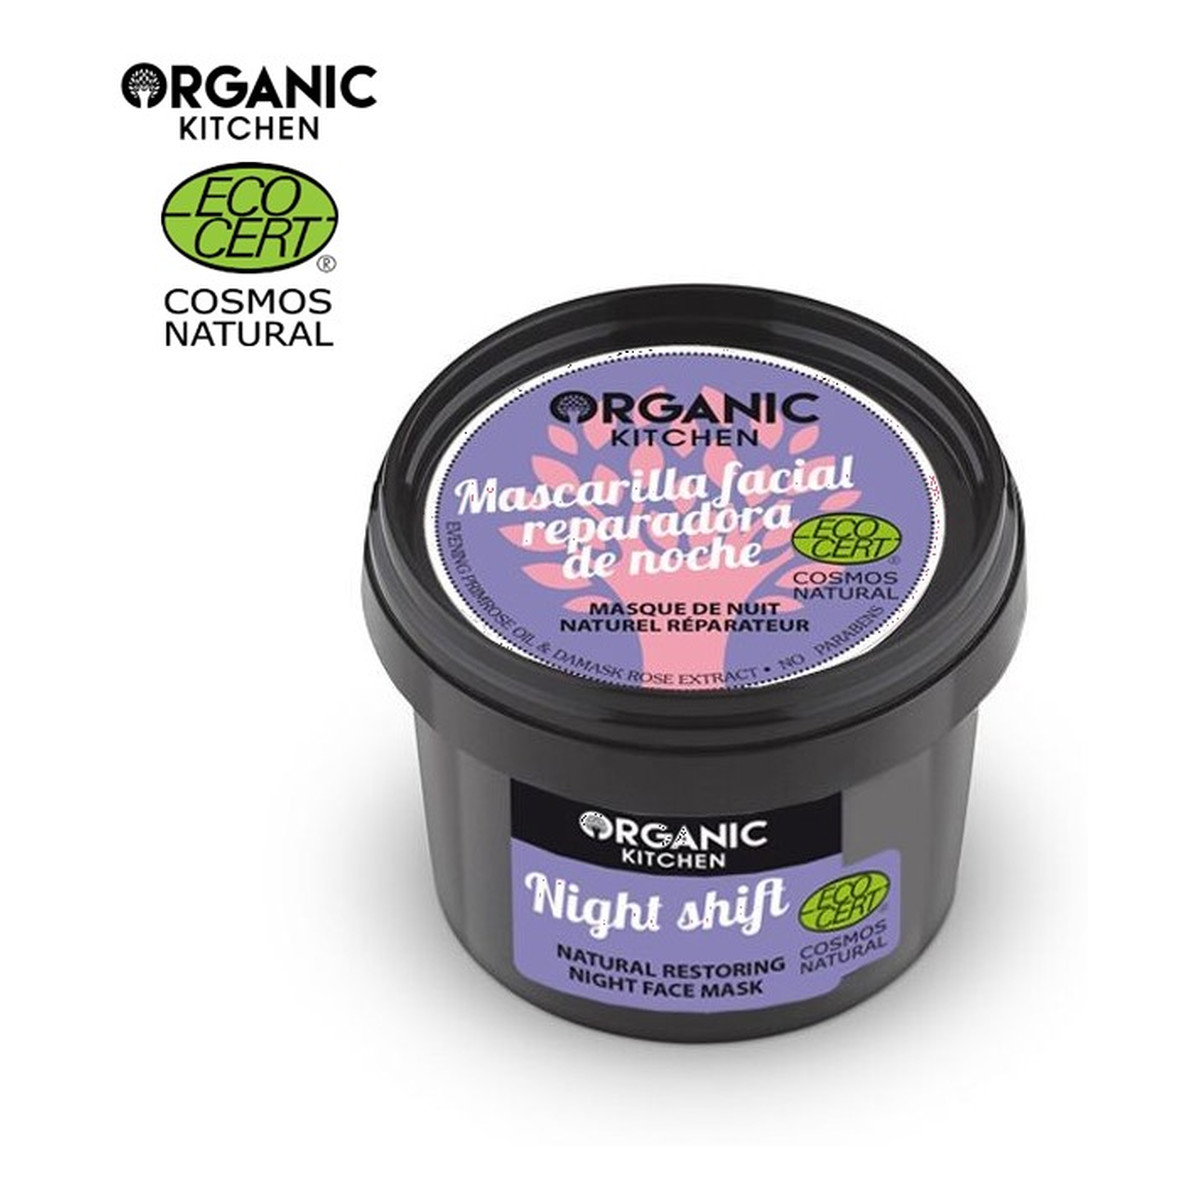 Organic Kitchen Nocna zmiana Naturalna regeneracyjna maska do twarzy na noc 100ml